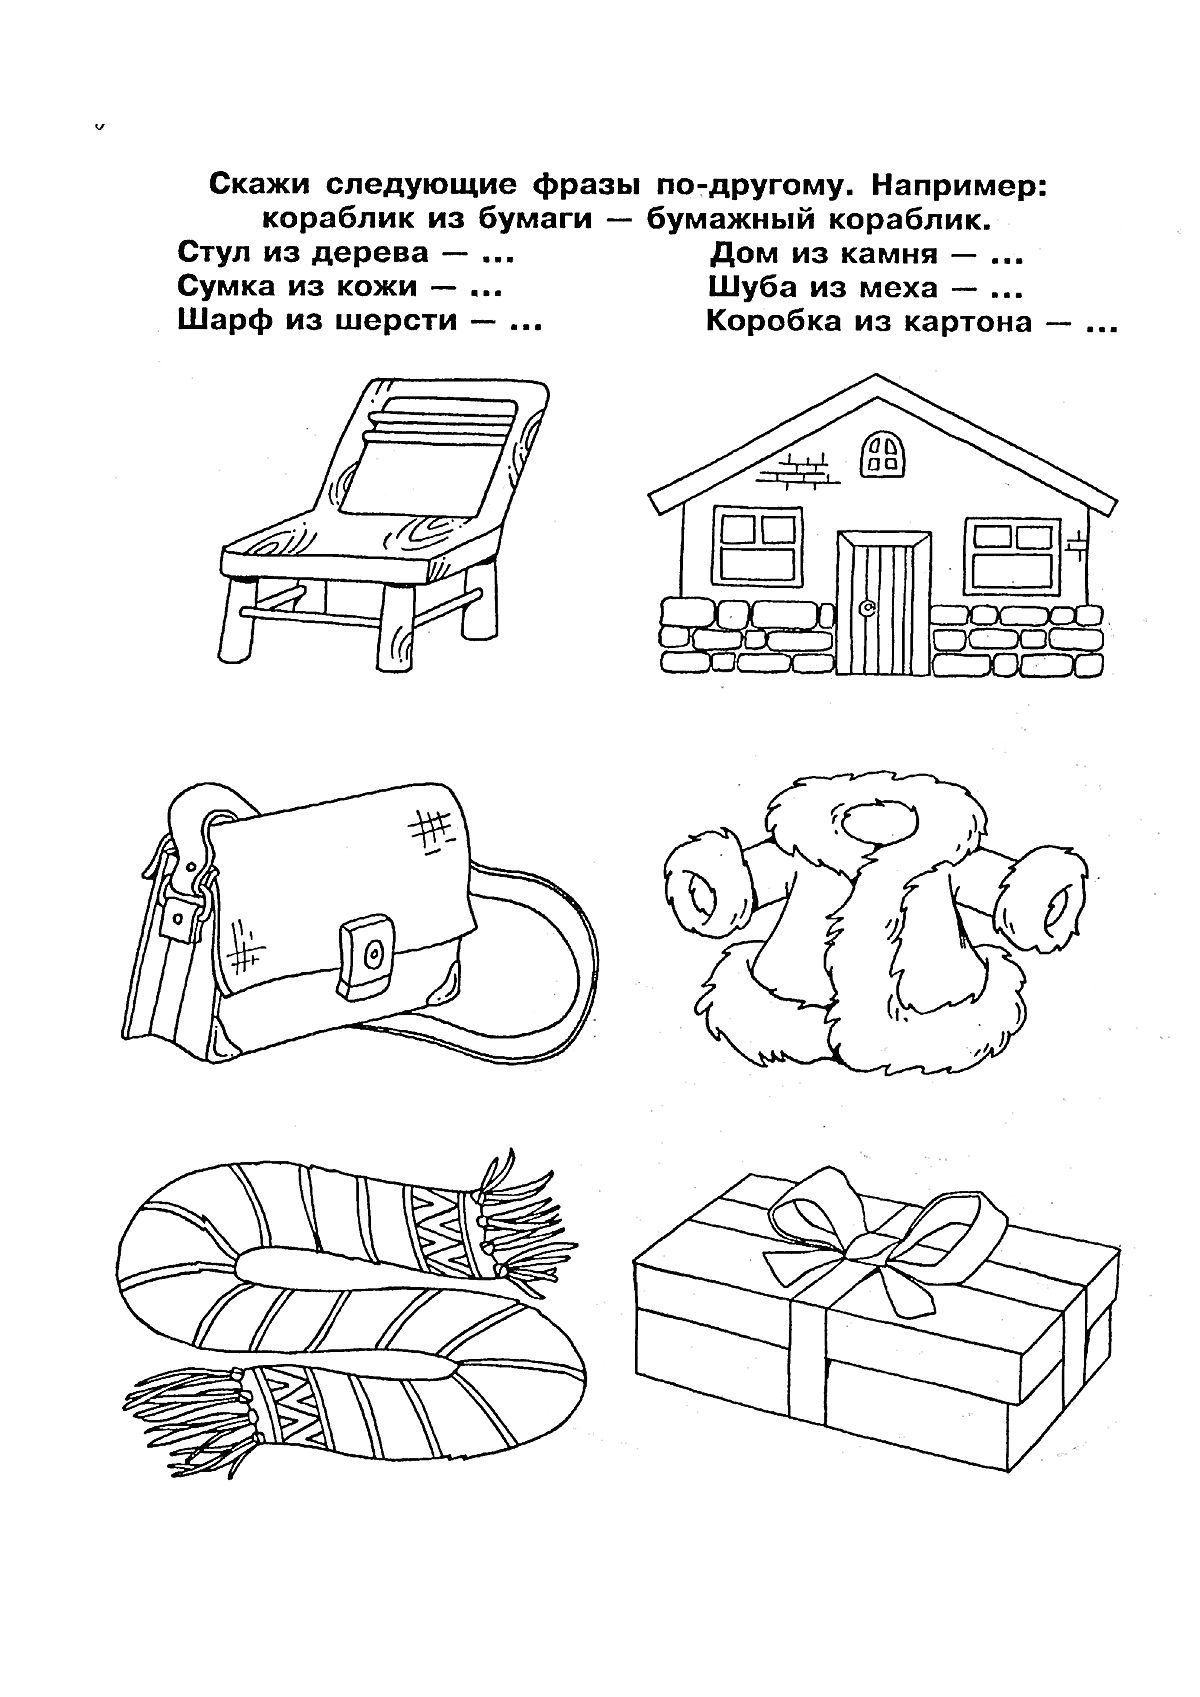 Раскраска для развития речи с изображениями стула, дома, сумки, шубы, шарфа и коробки